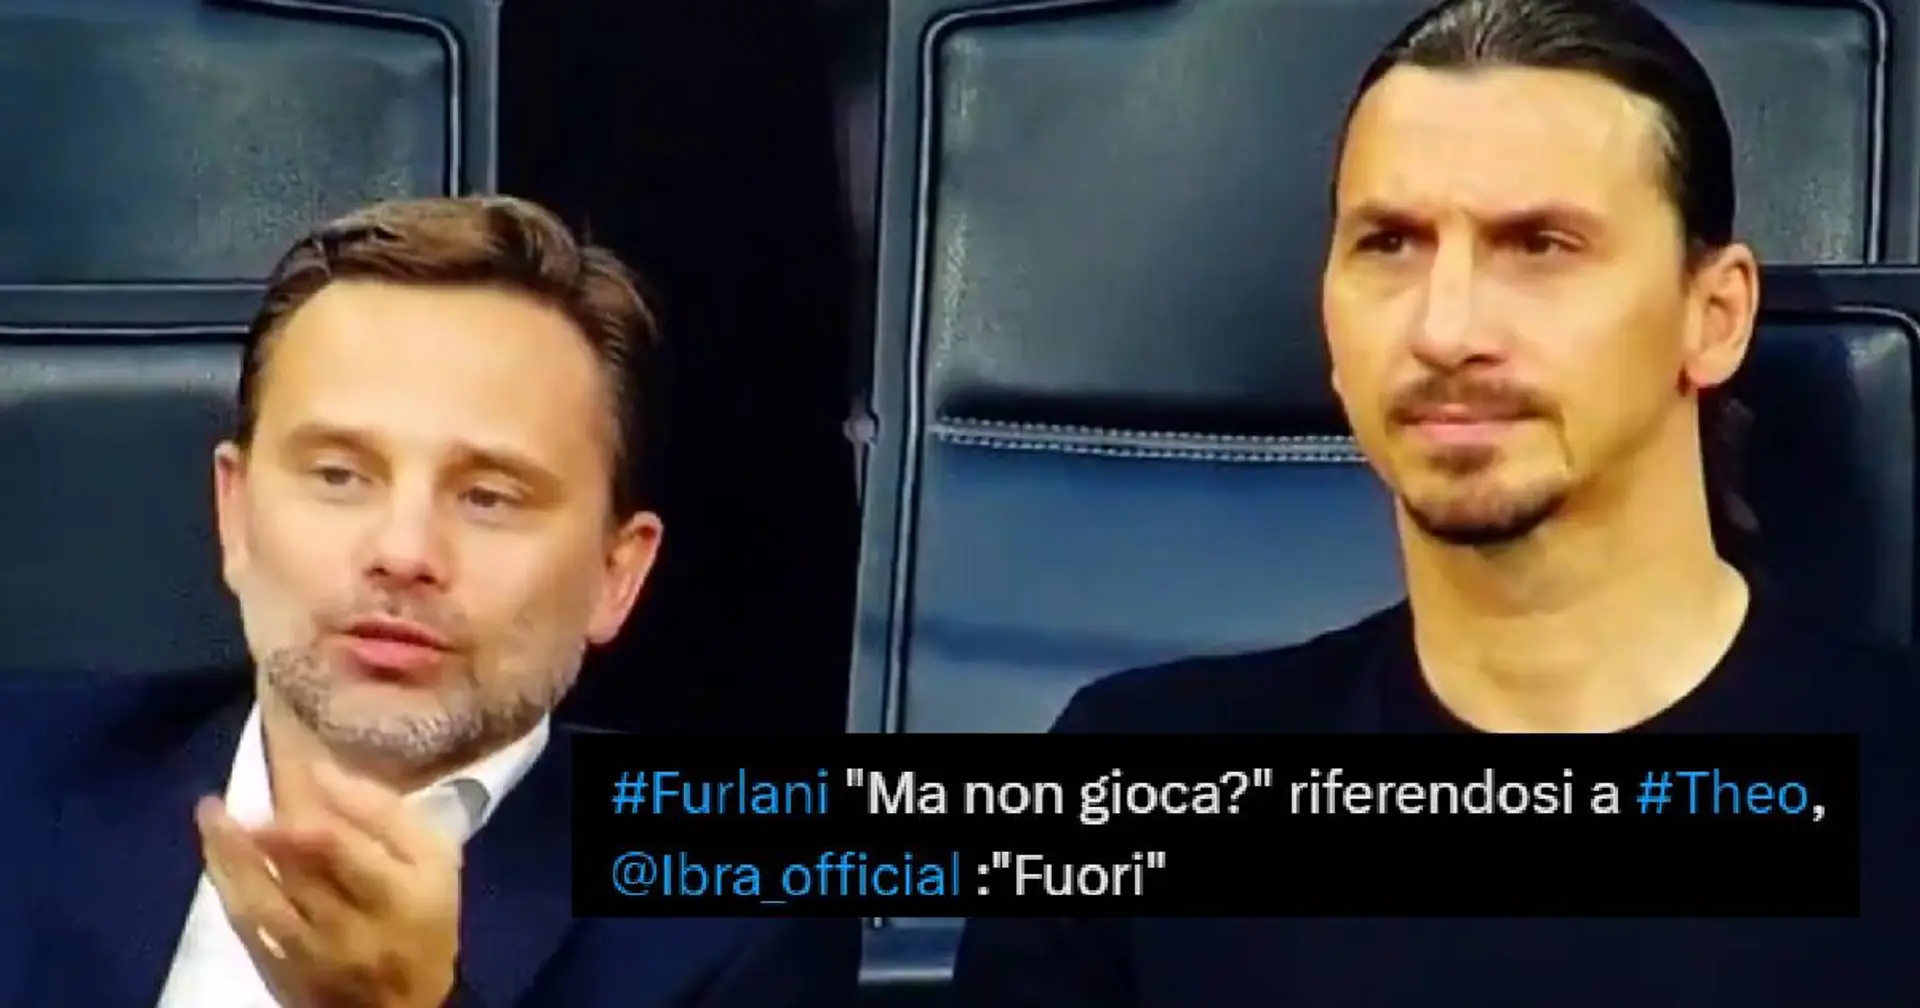 ''Non sa chi gioca, Furlani imbarazzante'': un tifoso attacca l'AD del Milan ma un giornalista fa chiarezza sul colloquio con Ibra